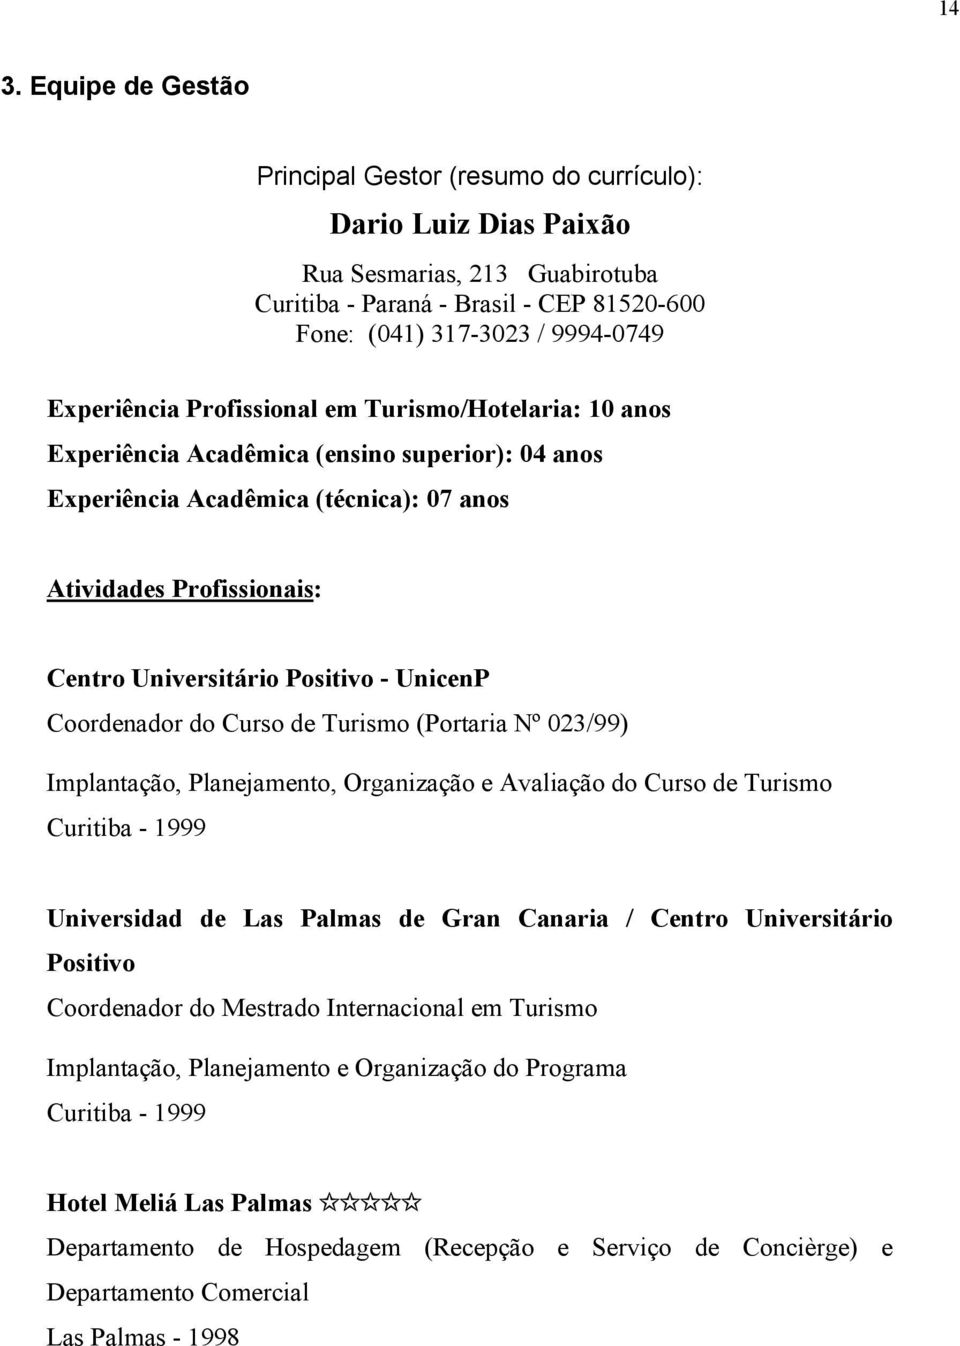 Positivo - UnicenP Coordenador do Curso de Turismo (Portaria Nº 023/99) Implantação, Planejamento, Organização e Avaliação do Curso de Turismo Curitiba - 1999 Universidad de Las Palmas de Gran